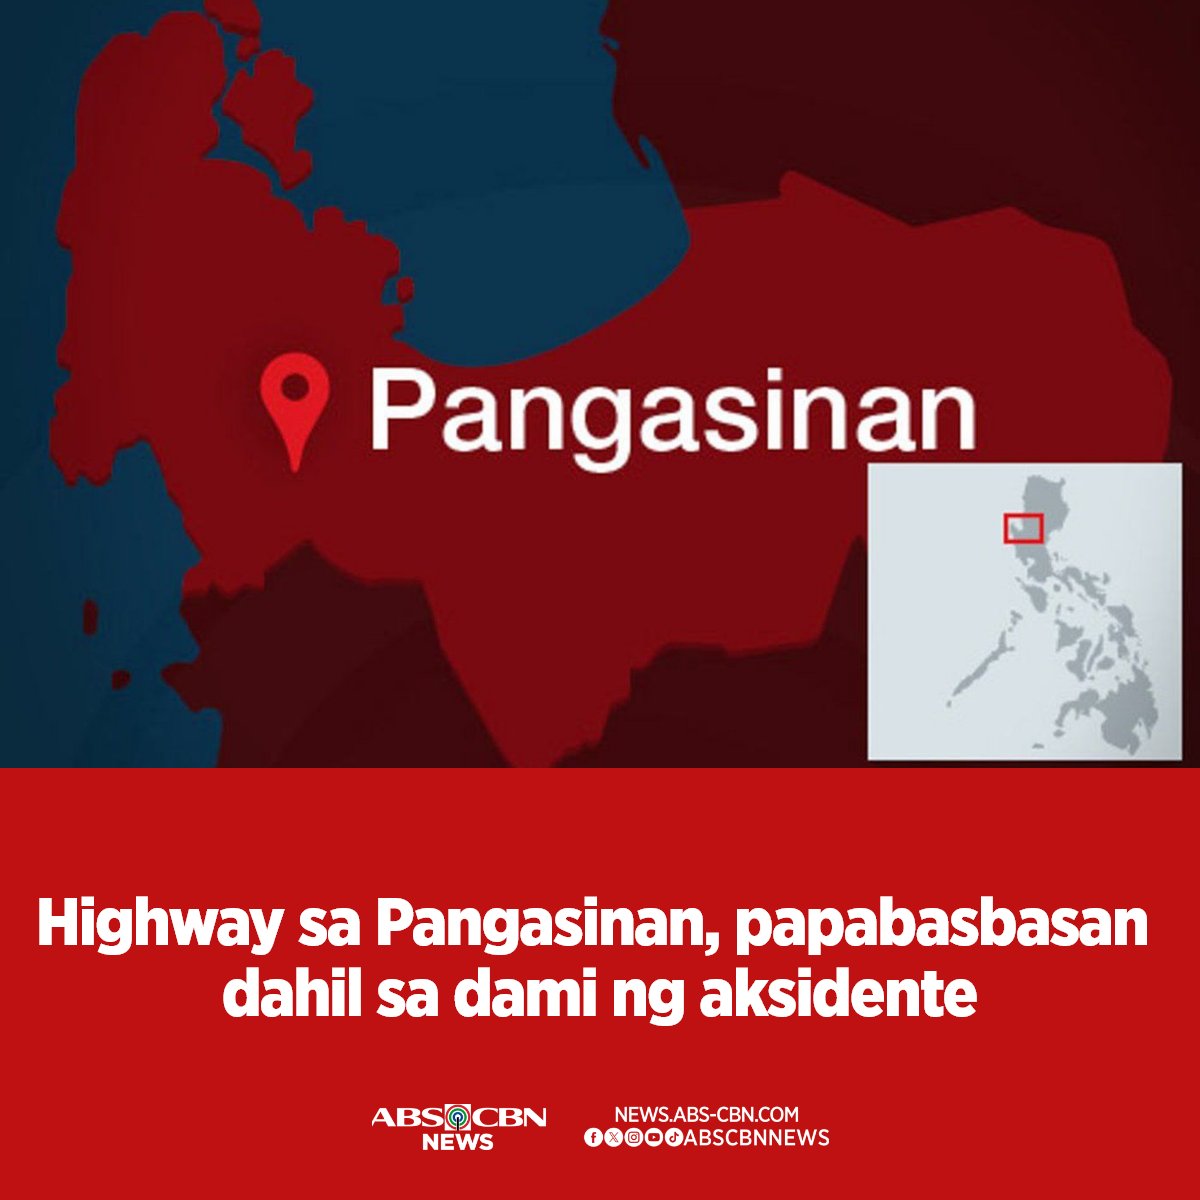 Handa nang makipag-ugnayan sa simbahan ang pamahalaan ng Bgy. Bued sa Calasiao, Pangasinan para mabasbasan ang national highway dahil sa madalas na aksidente sa daan. BASAHIN: abscbn.news/3WU3QPw